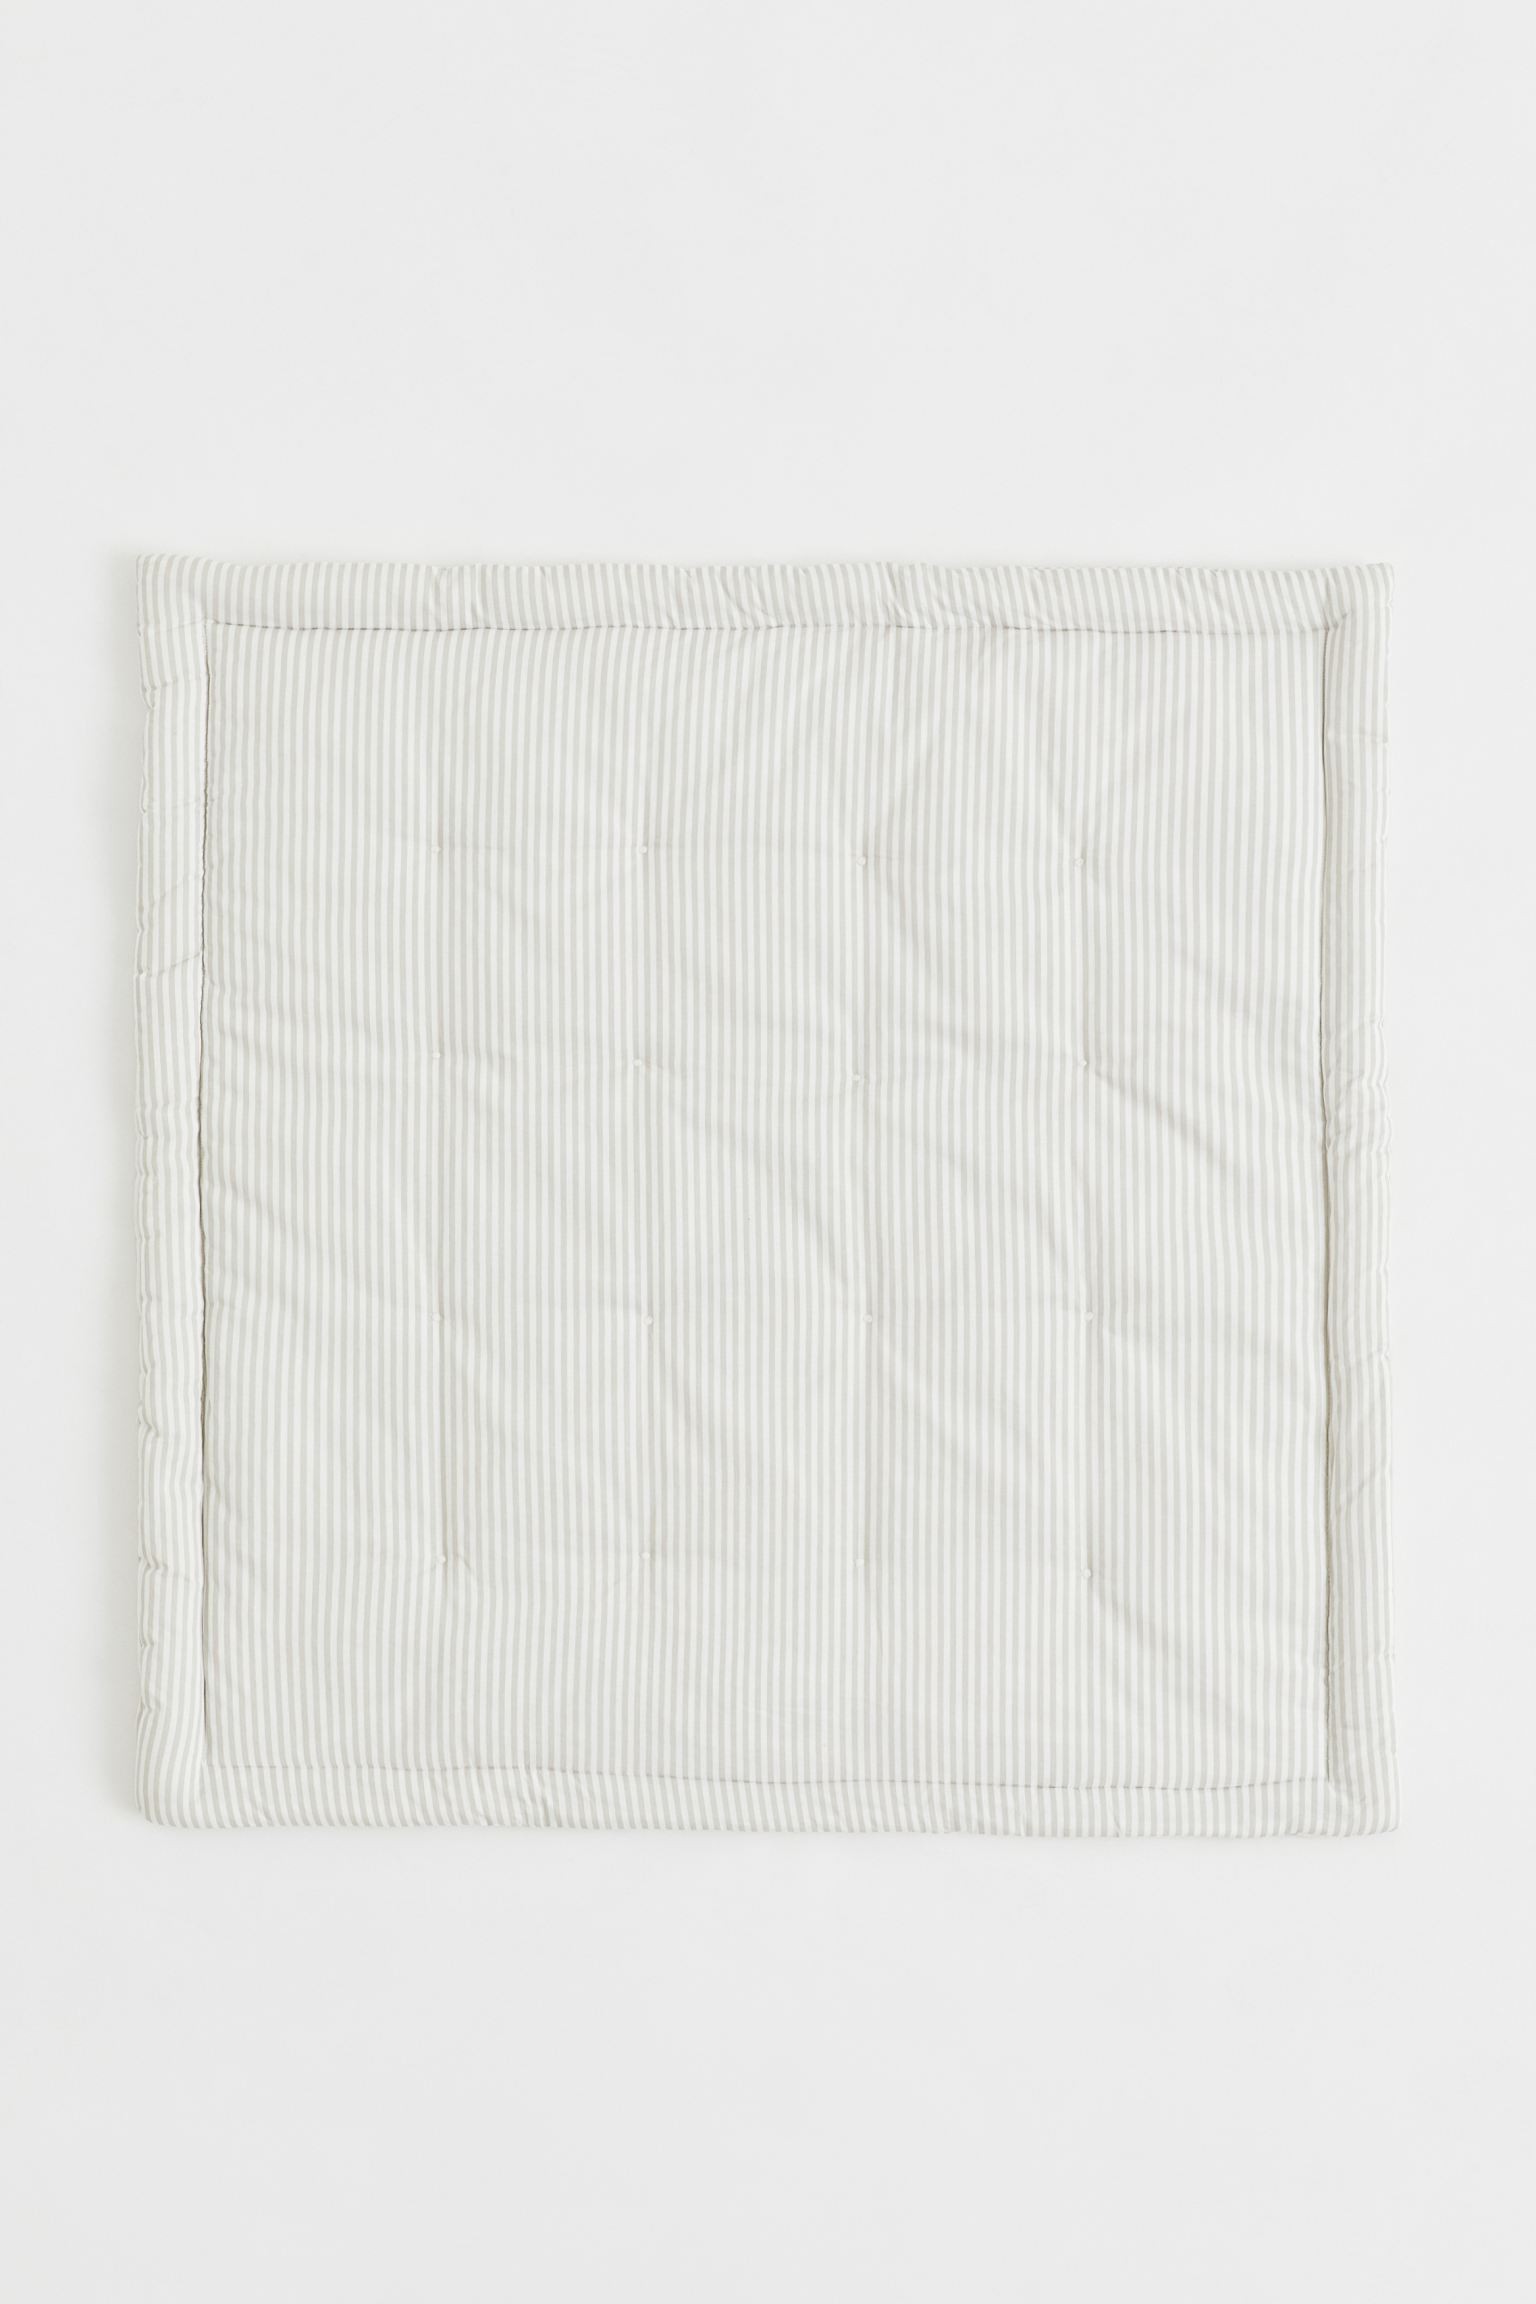 Детский коврик из хлопка, Светло-серый/Полосатый, 100x100